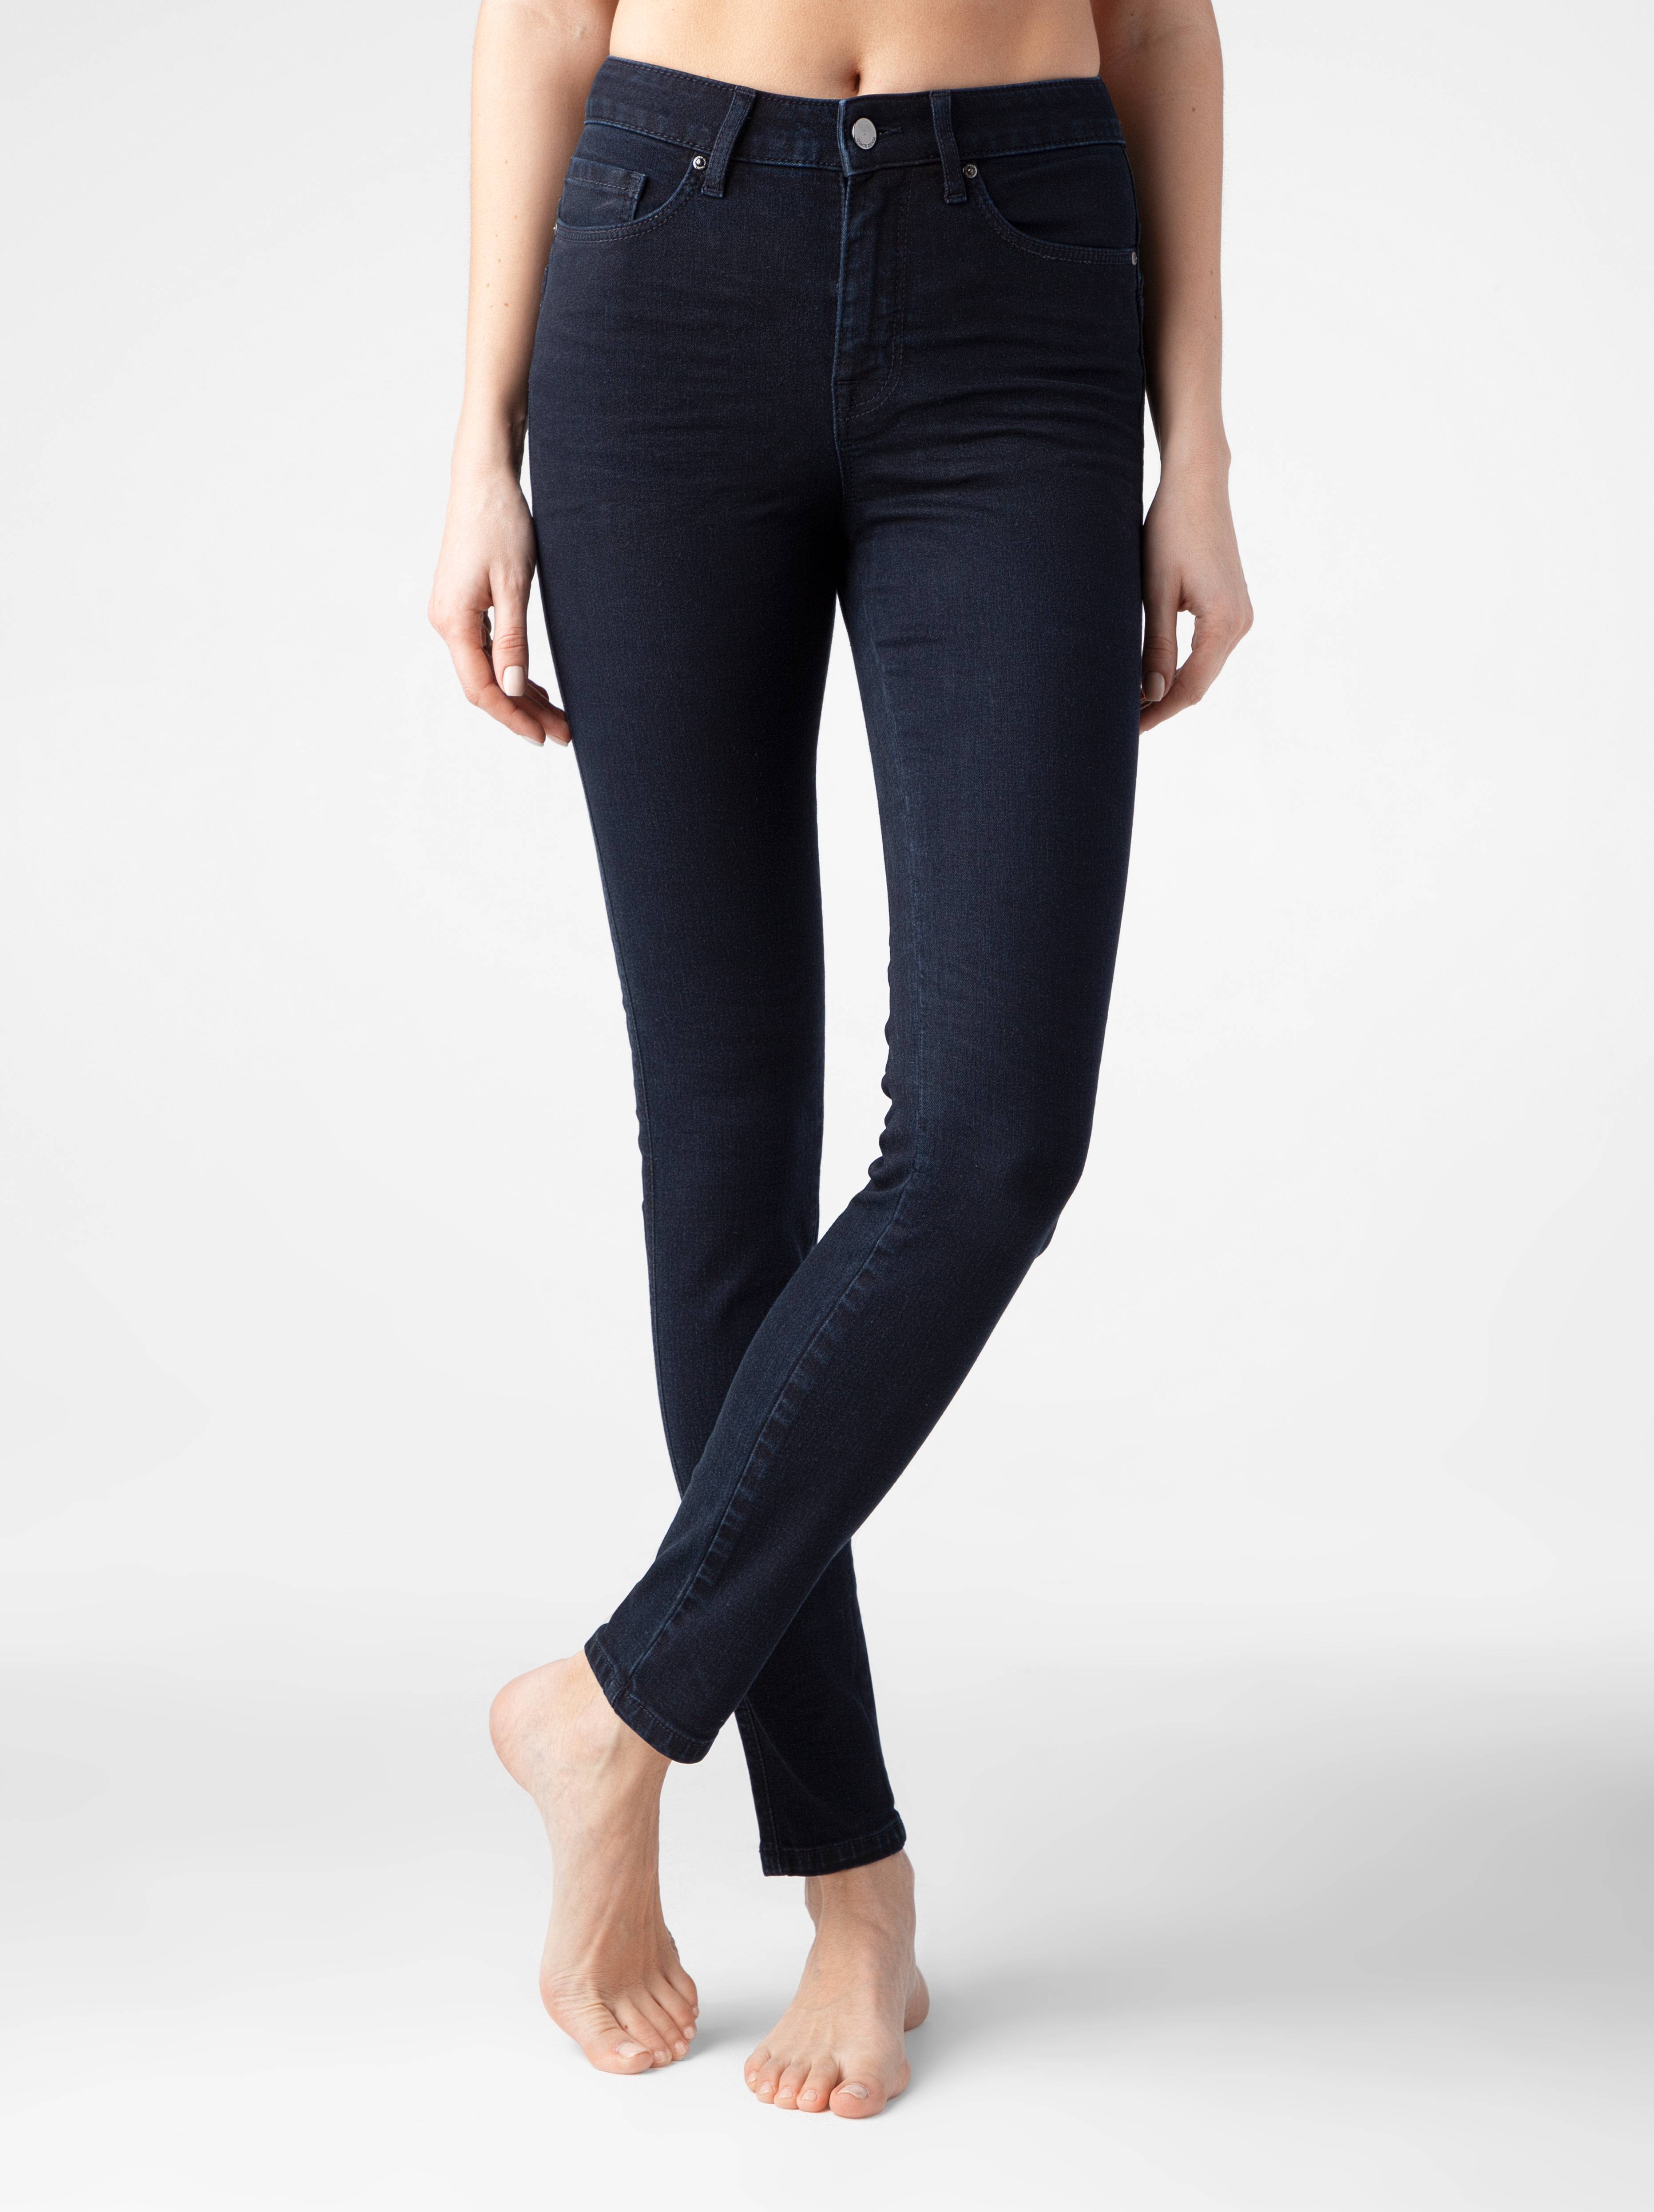 Моделирующие джинсы skinny с высокой посадкой CON-270 Conte цвет dark indigo